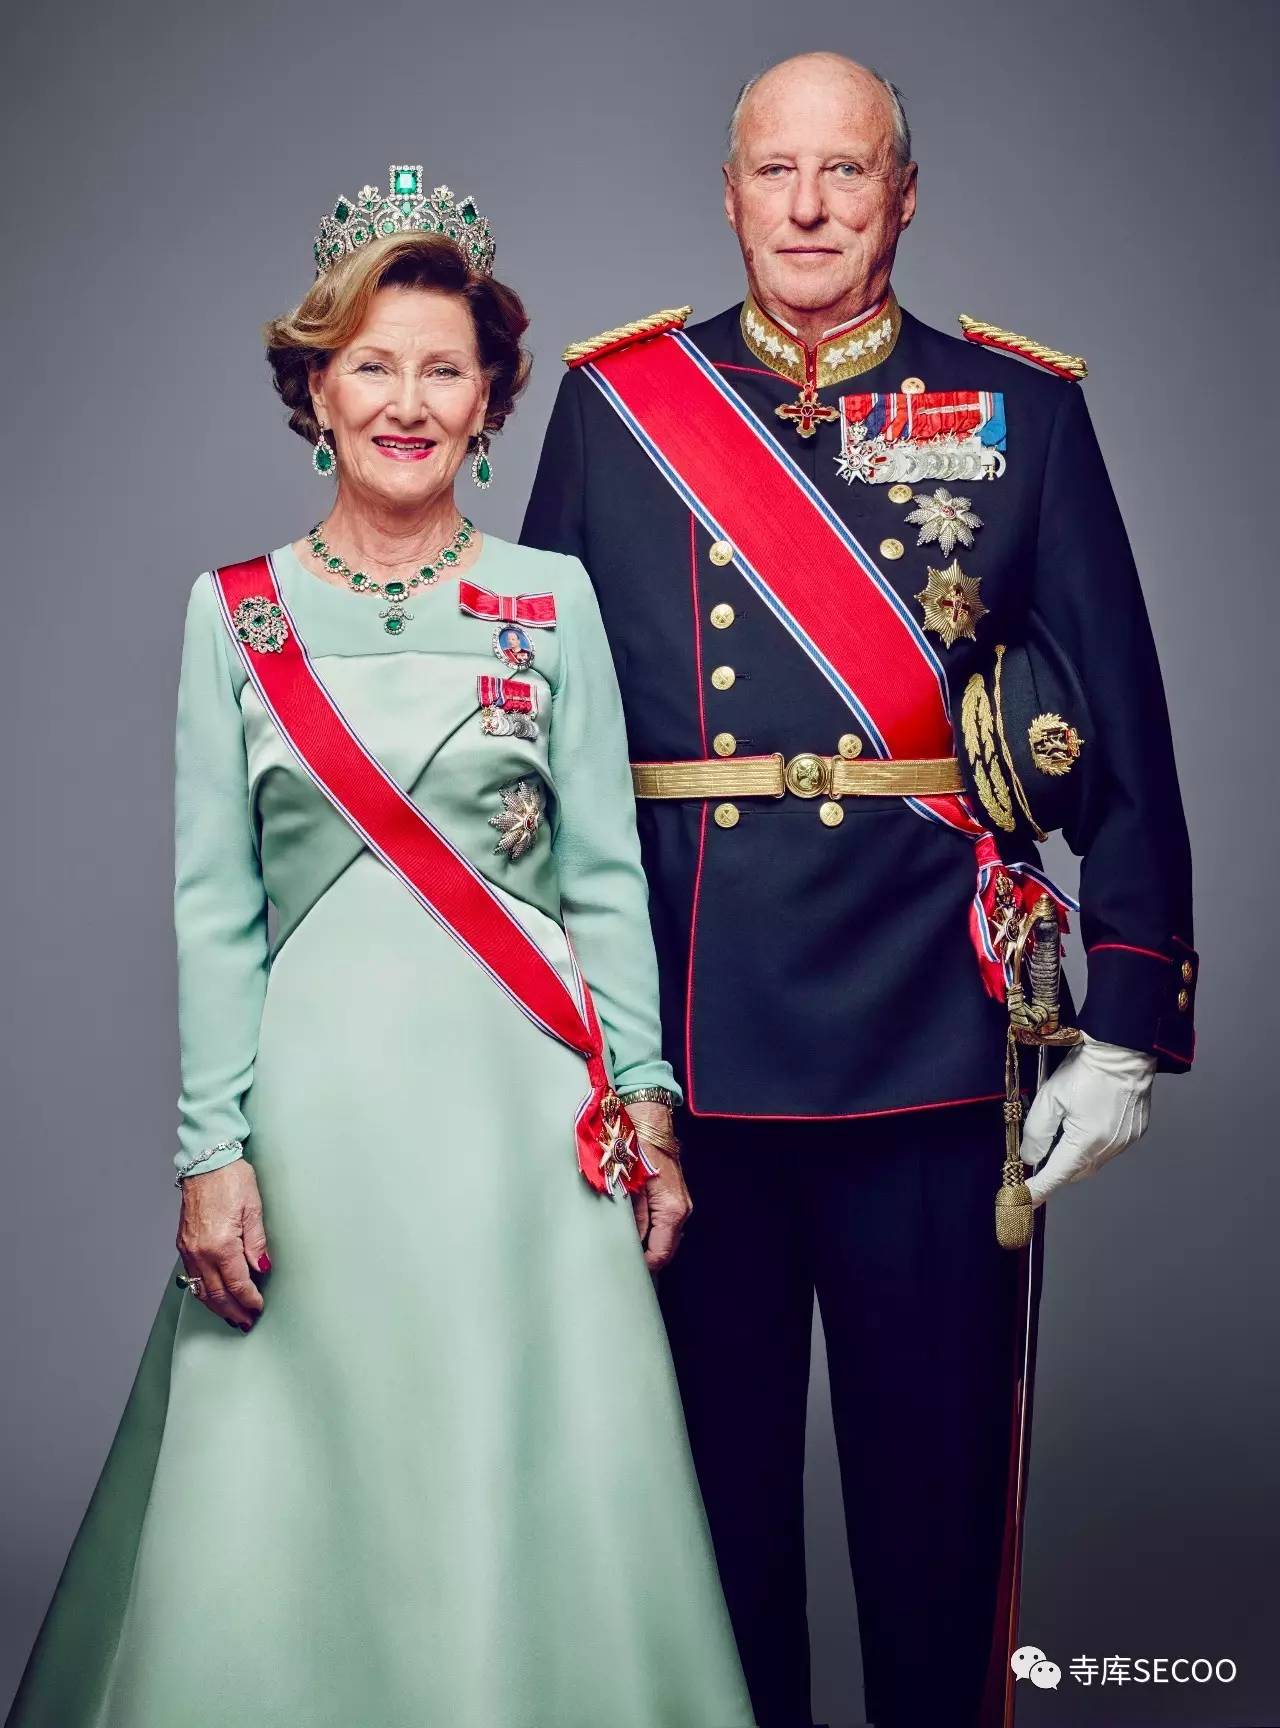 就是挪威国王哈拉德五世和王后宋雅今天要讲的故事轻松的家庭氛围大概